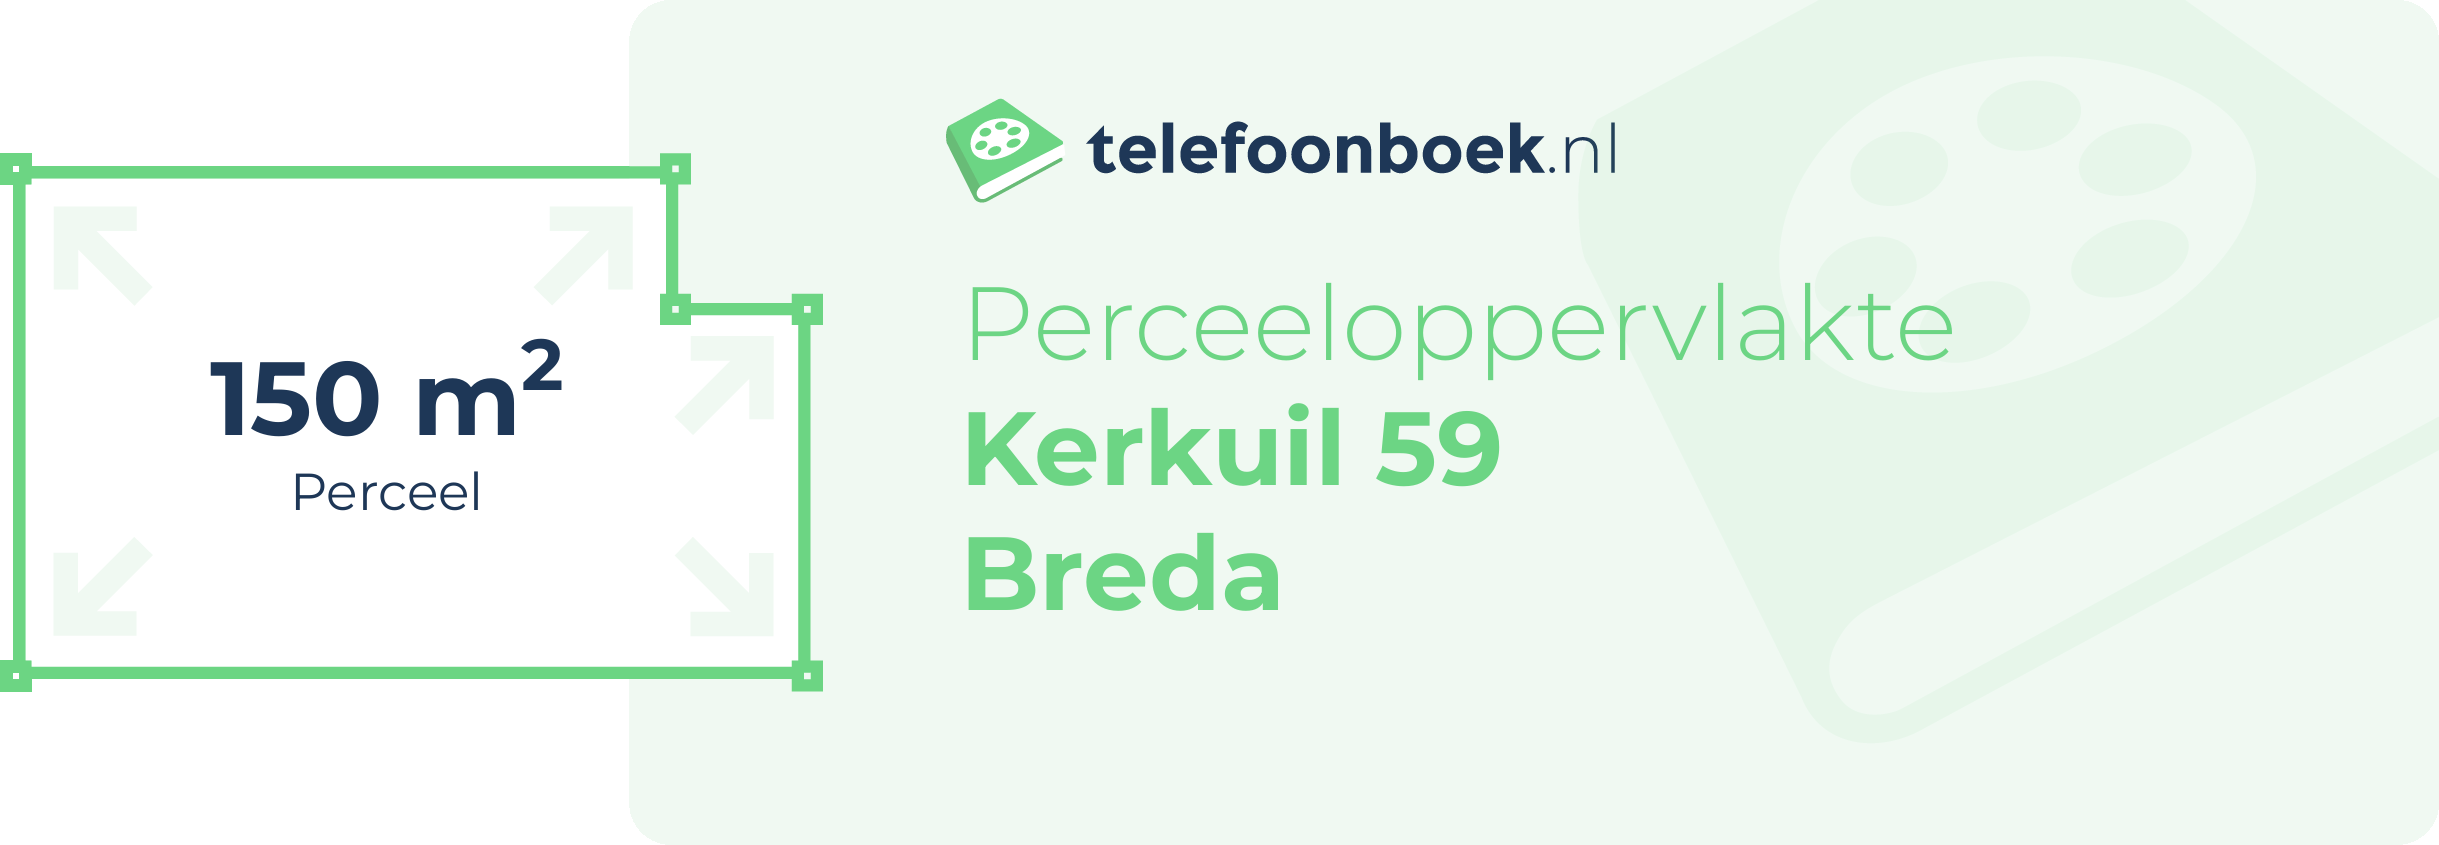 Perceeloppervlakte Kerkuil 59 Breda